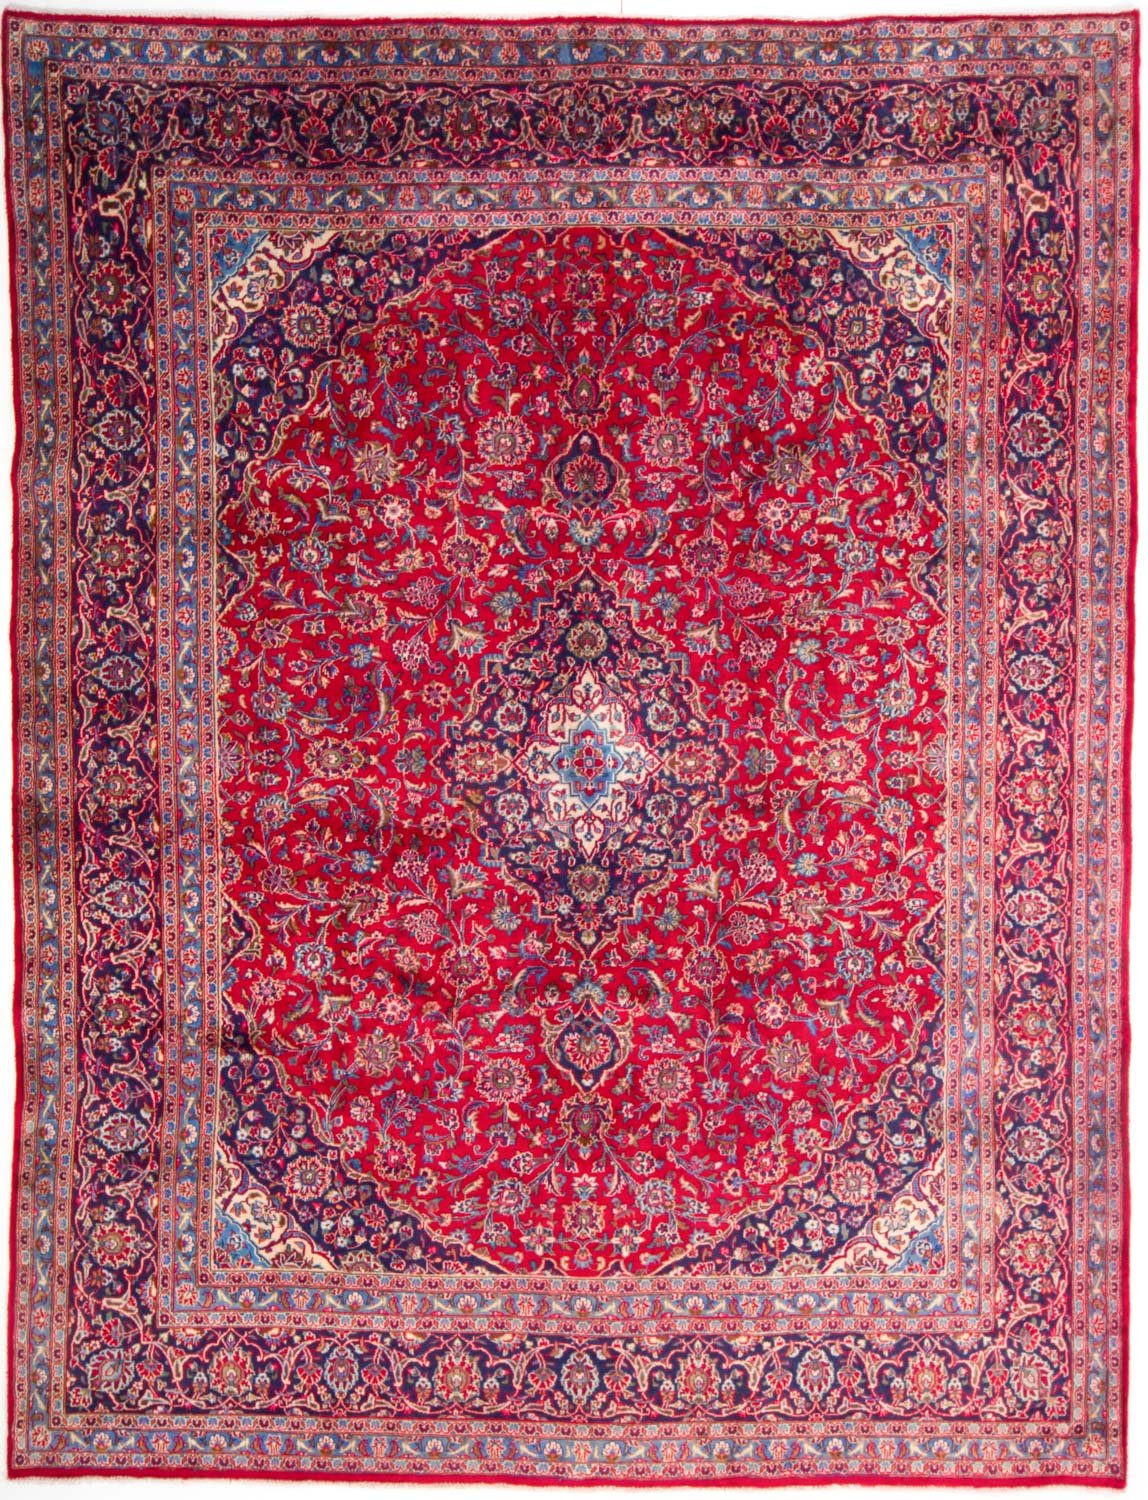 Europa stijl Ochtend gymnastiek Perzische tapijten kopen? Zo herken je zelf een écht Perzisch tapijt (7  tips) | Glamourista - kapsels